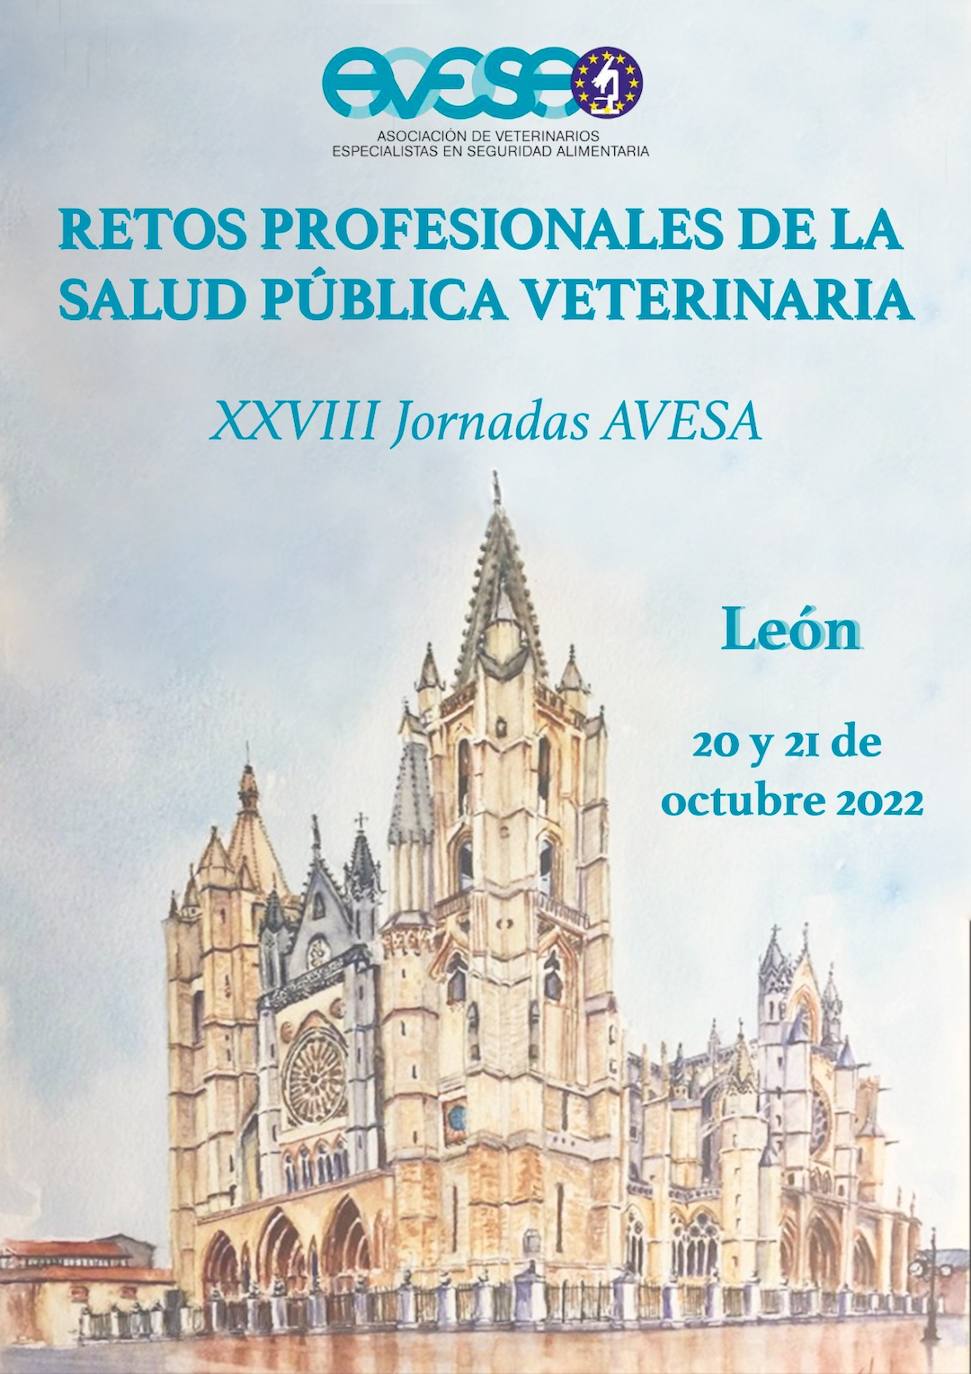 Cartel promocional del congreso nacional de veterinaria.